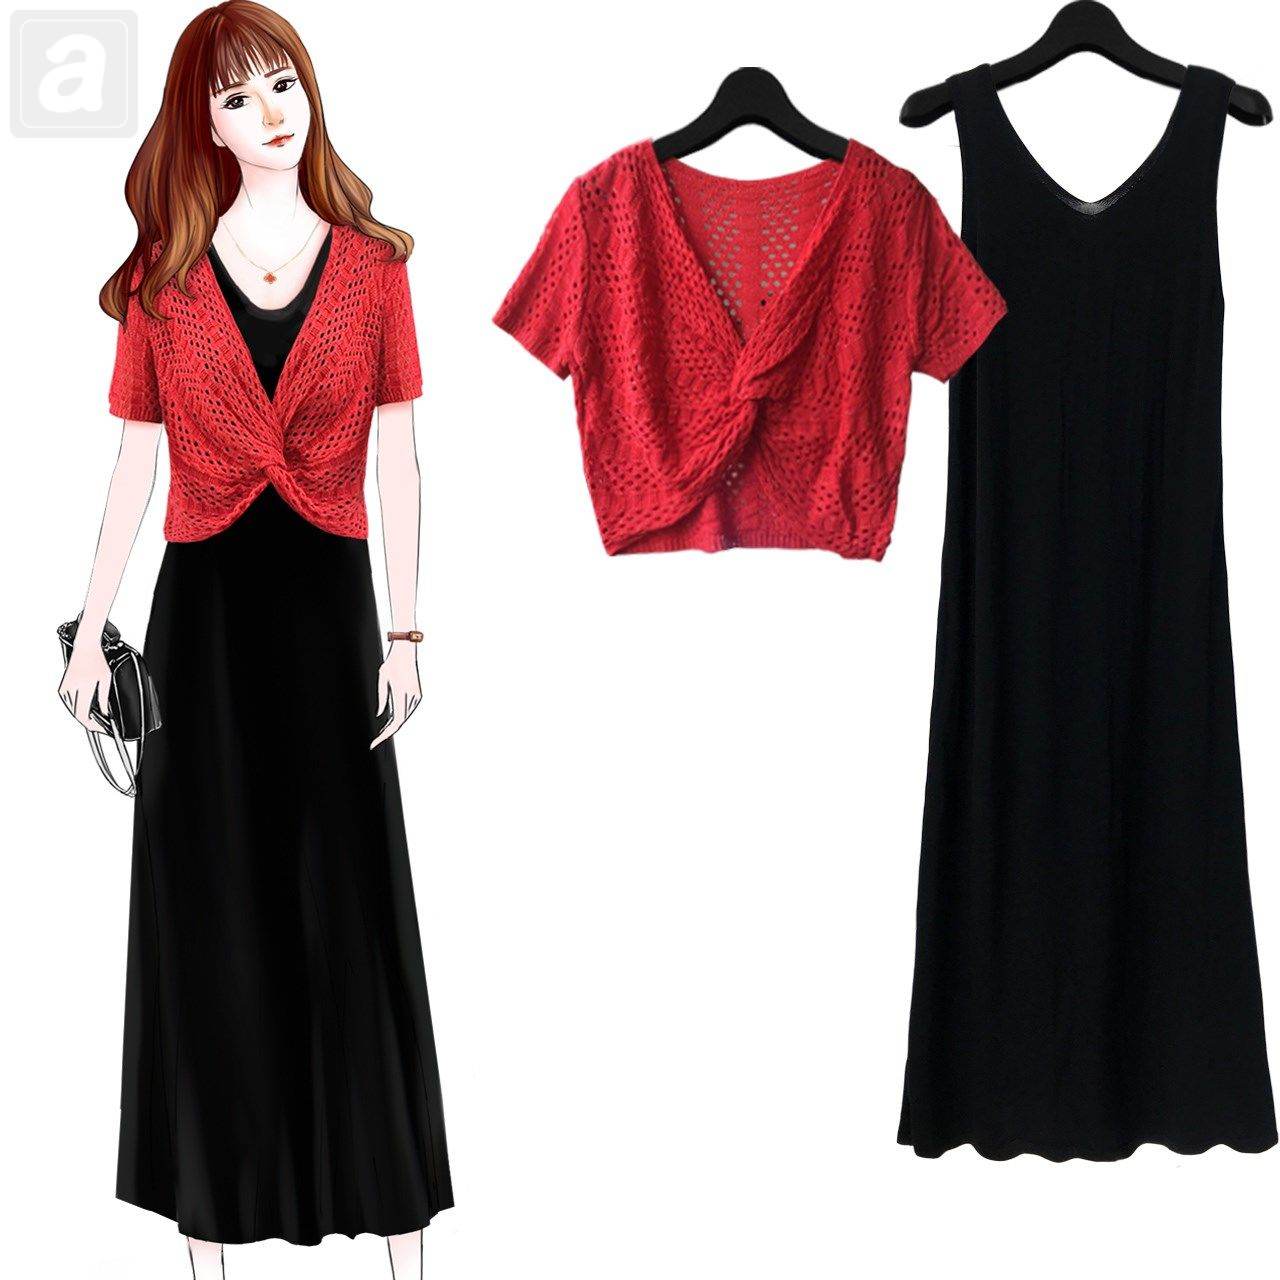 紅色/針織衫+黑色/洋裝